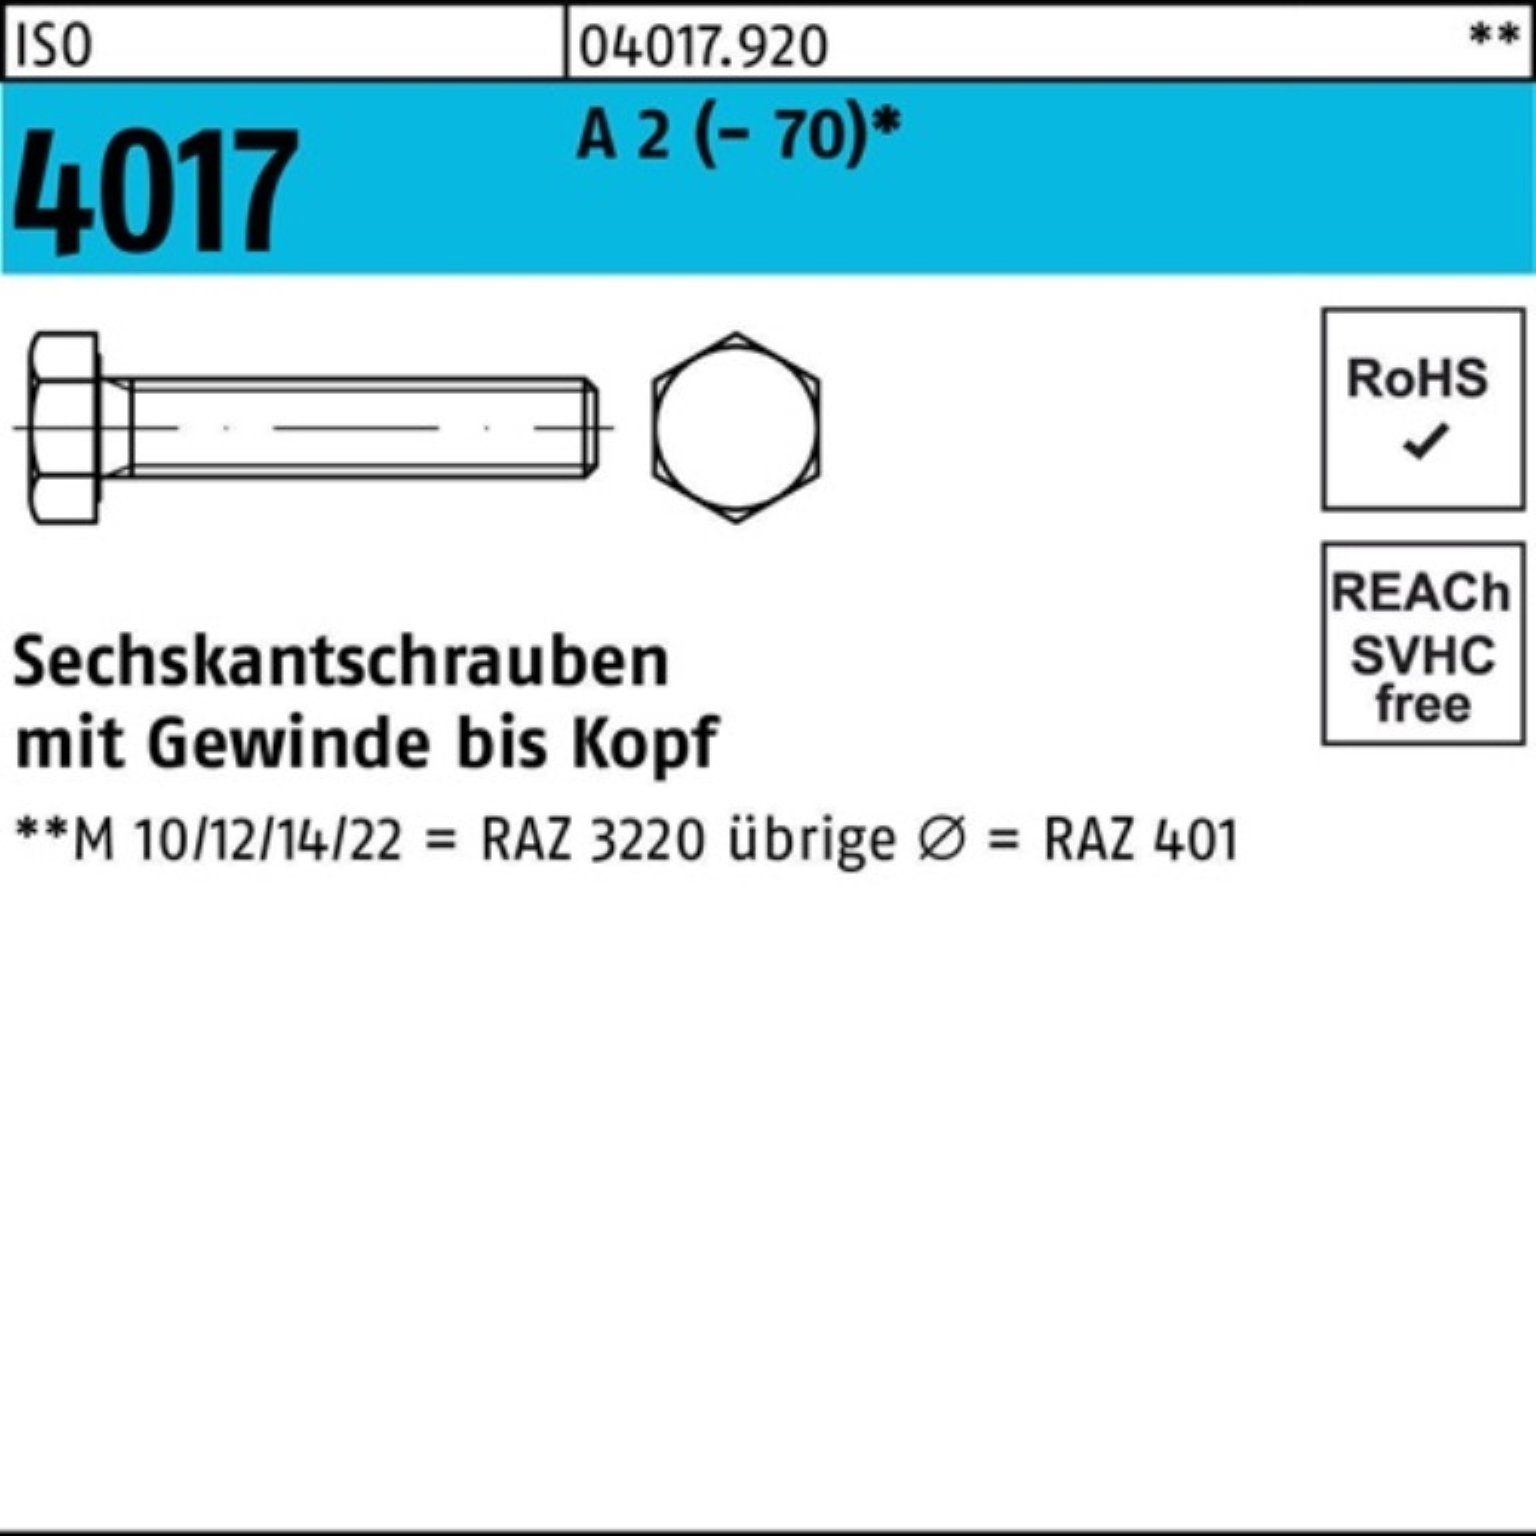 Bufab Sechskantschraube 100er Pack Sechskantschraube ISO 4017 VG M18x 100 A 2 (70) 25 Stück